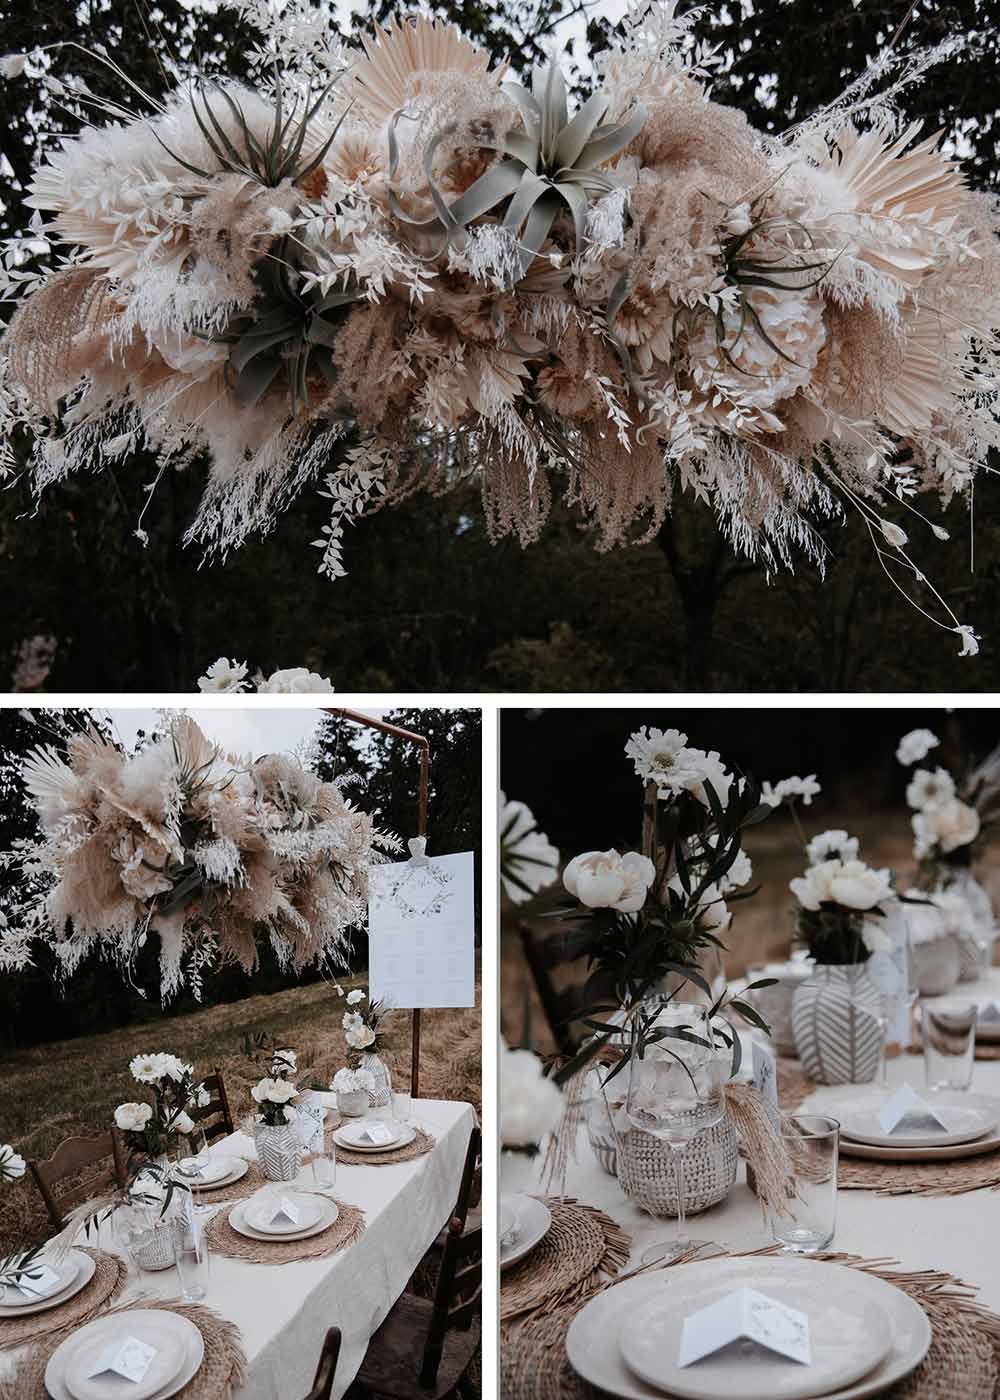 Die auffällige Blumendeko an den Hochzeitstischen ist. ein richtiger Eyecatcher. Über den Tischen hängen zauberhafte Gestecke aus wilden Blumen und Gräsern in beige, passend zur restlichen Deko.